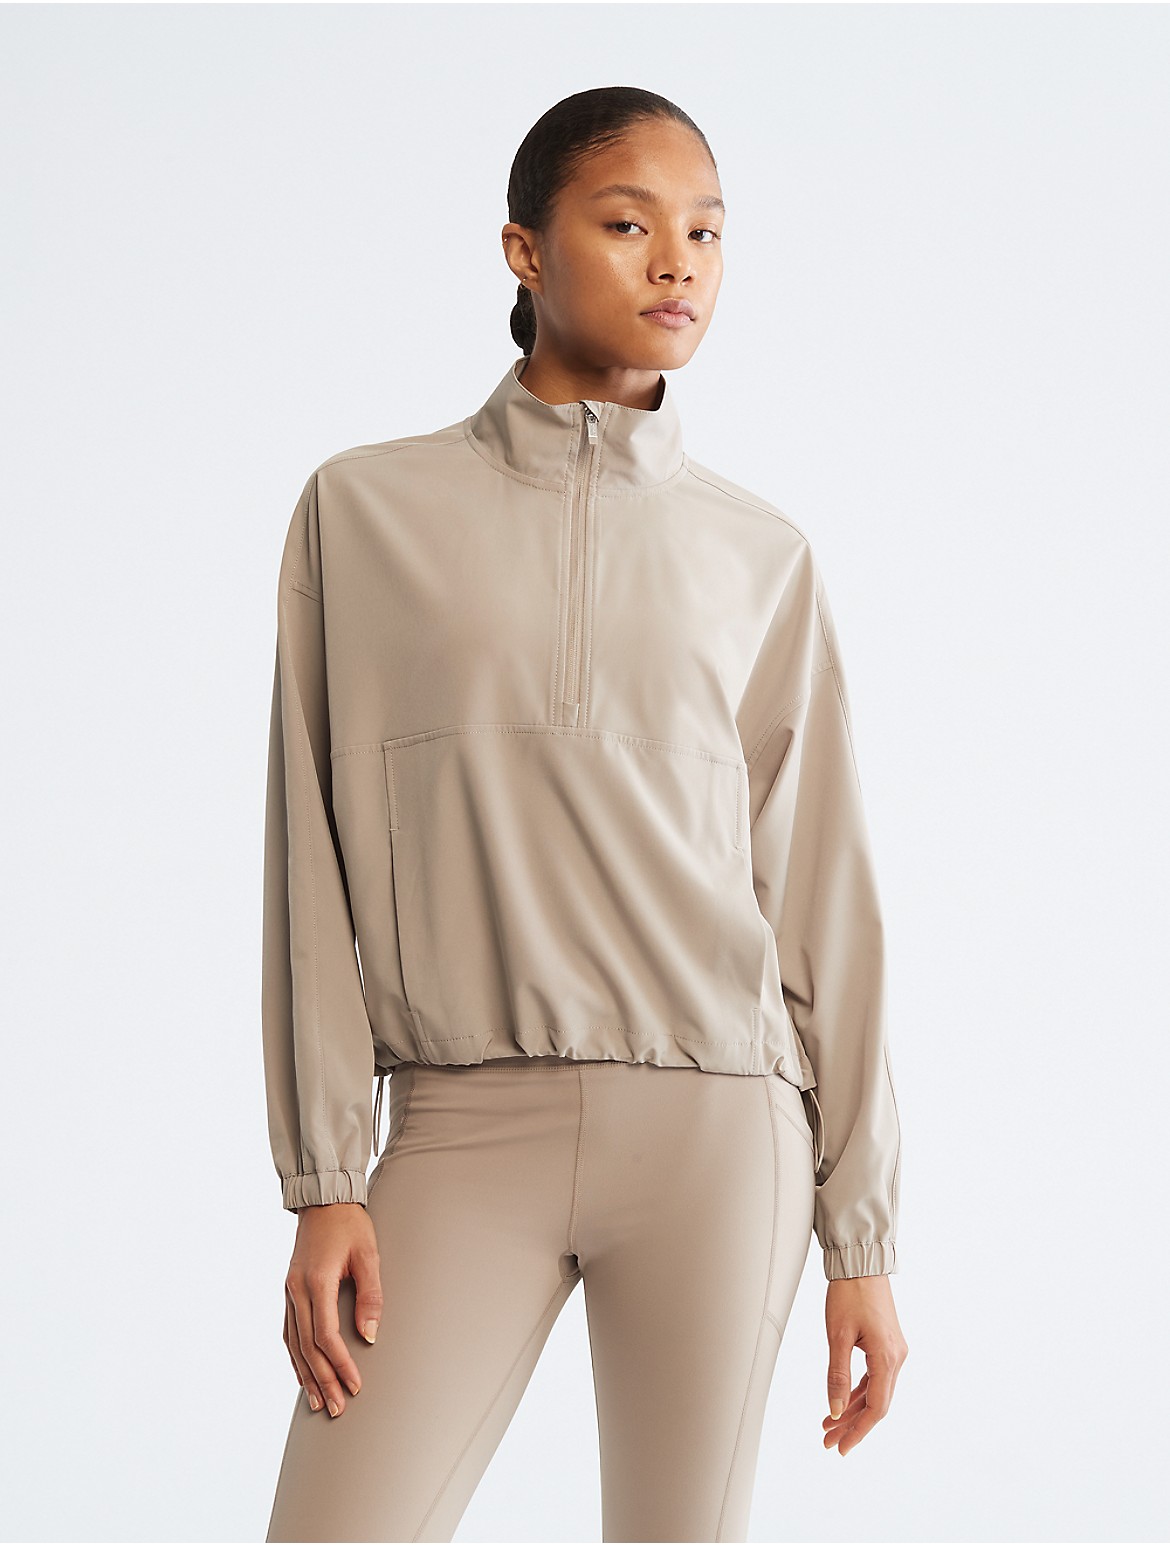 Calvin Klein Women's Performance 1/2 Zip Pullover Jacket - Neutral - XL